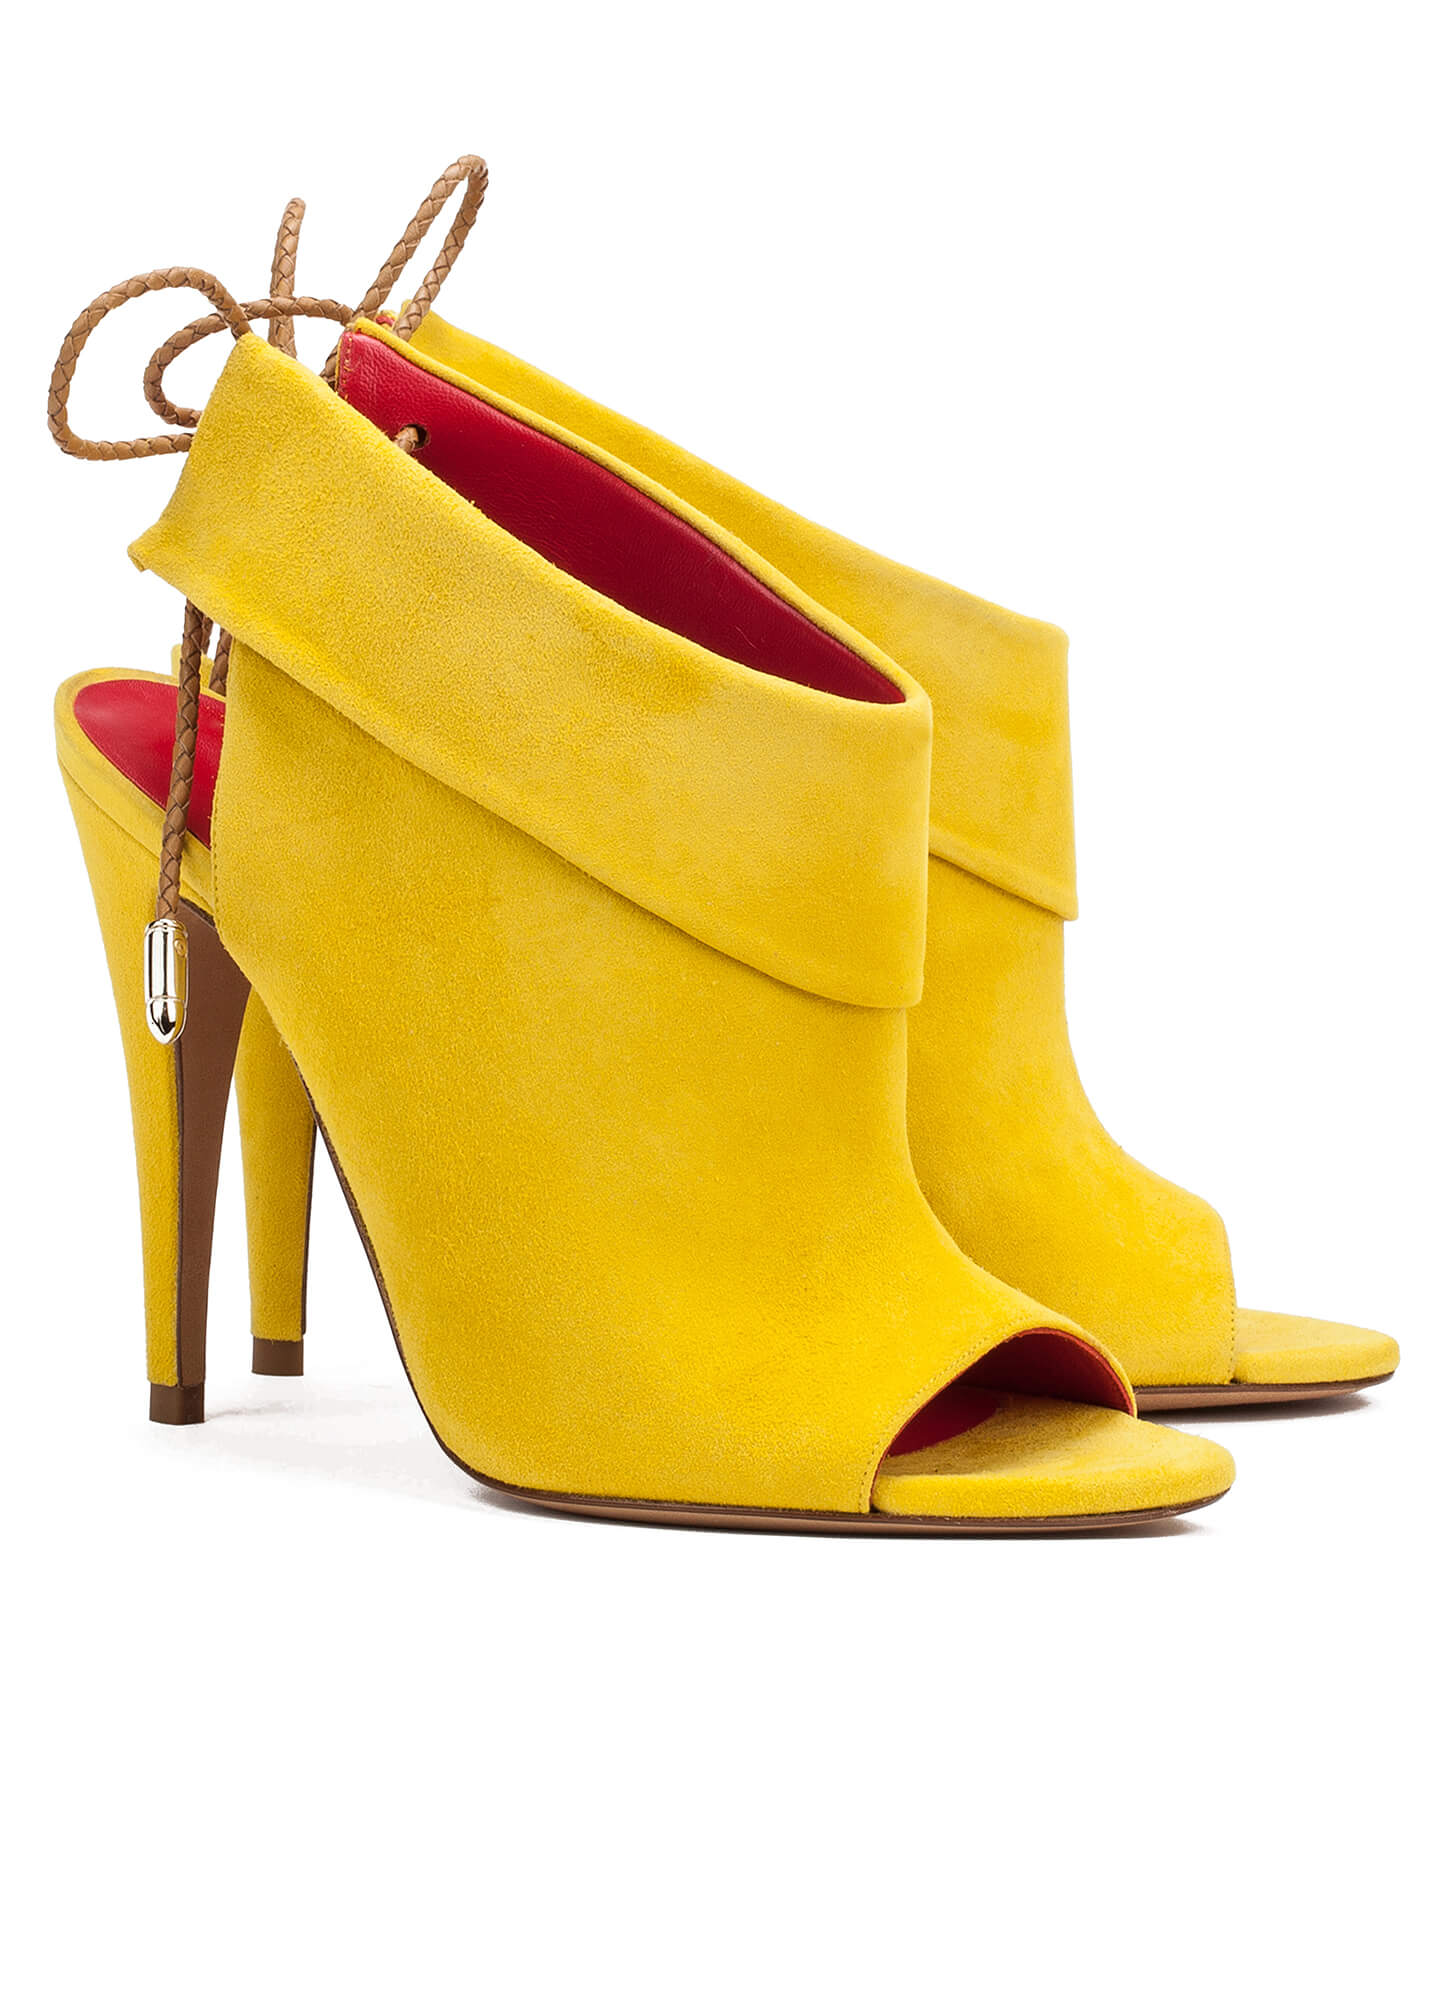 High heel sandals in yellow suede - online shoe store Pura Lopez . PURA ...